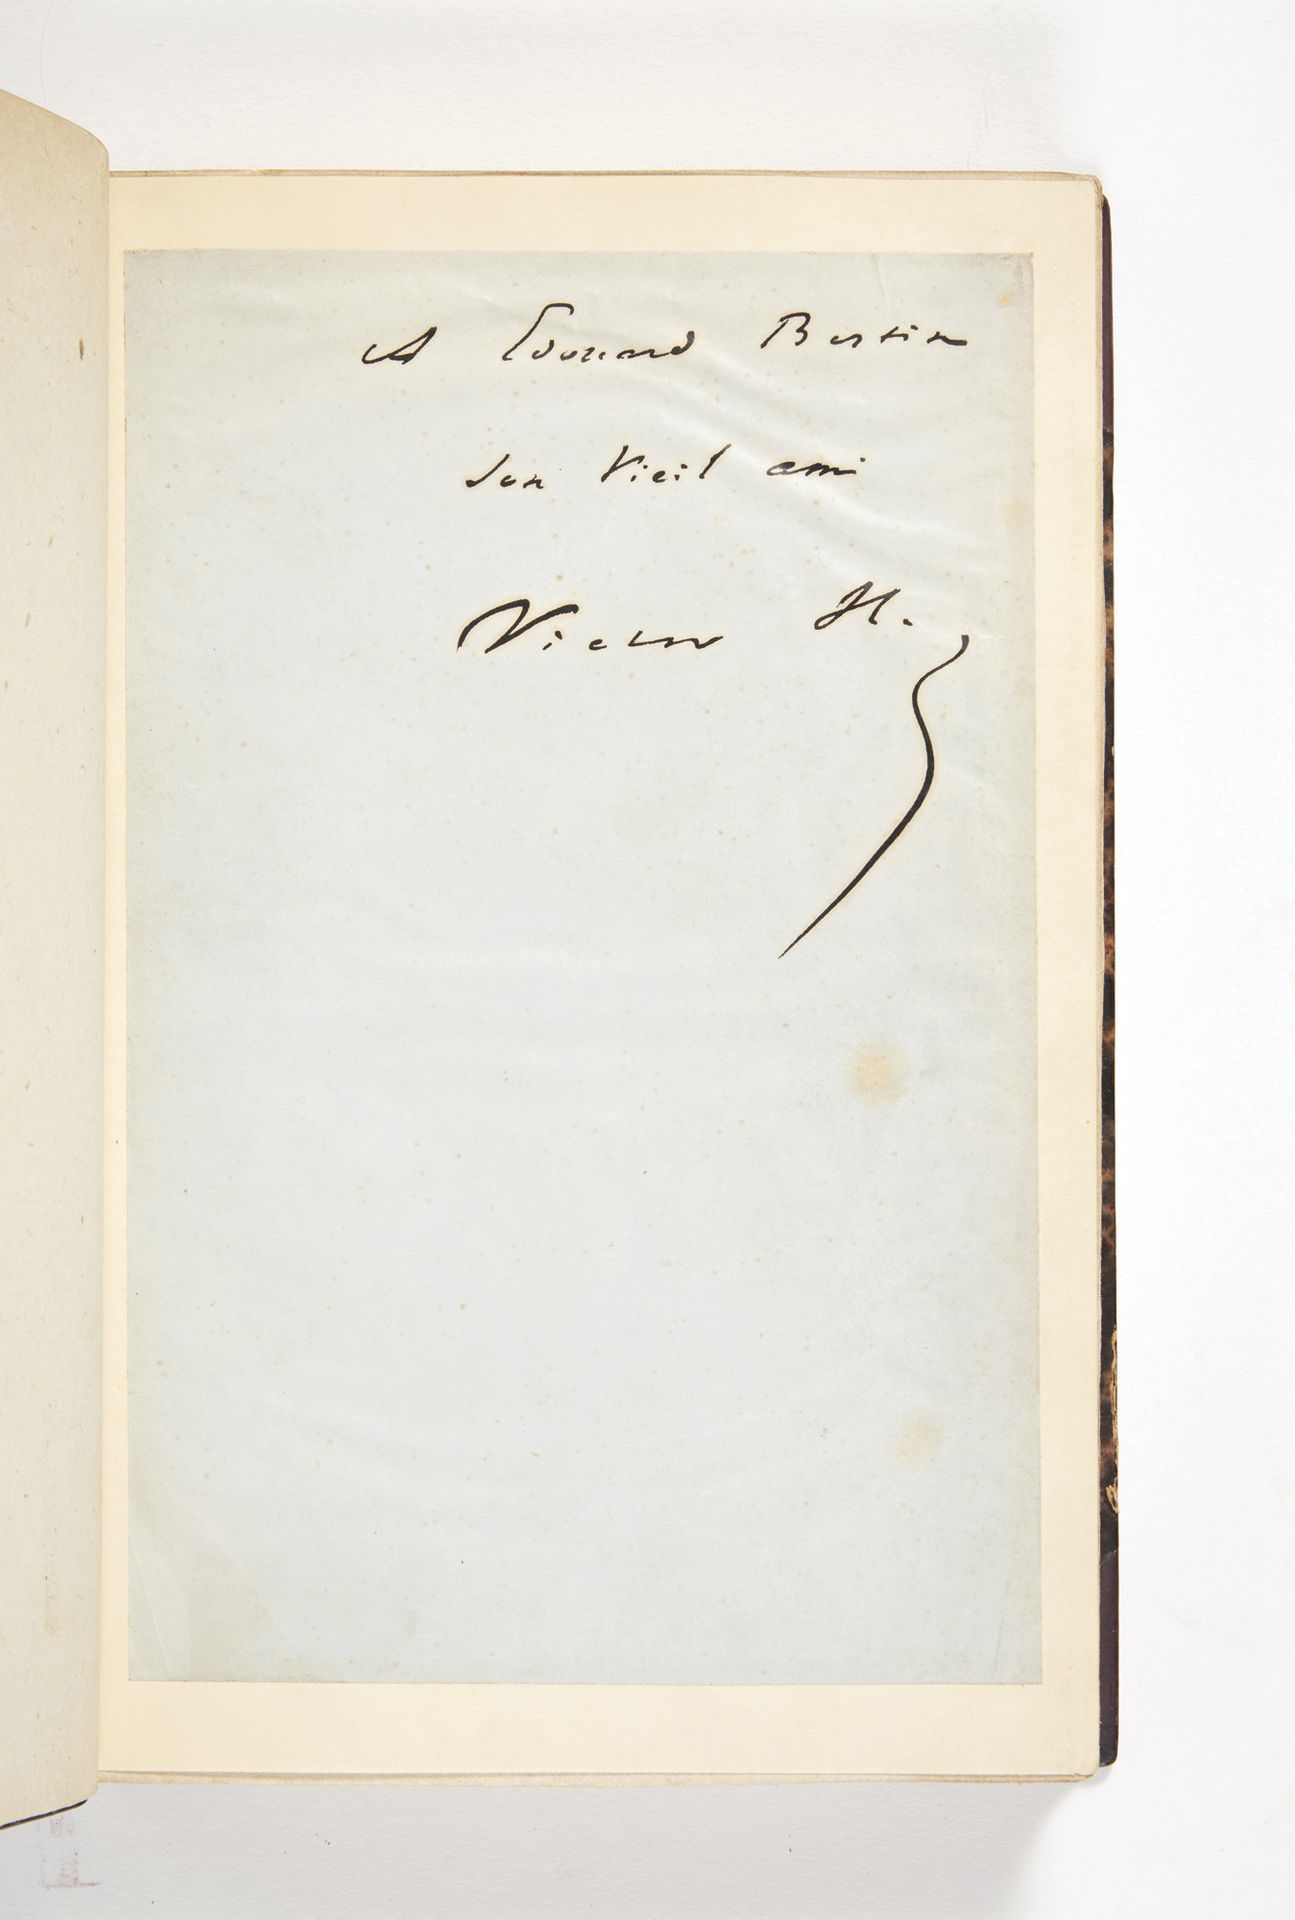 HUGO, victor. L’Homme qui rit. Paris, Librairie Internationale, Lacroix, 1869 ; &hellip;